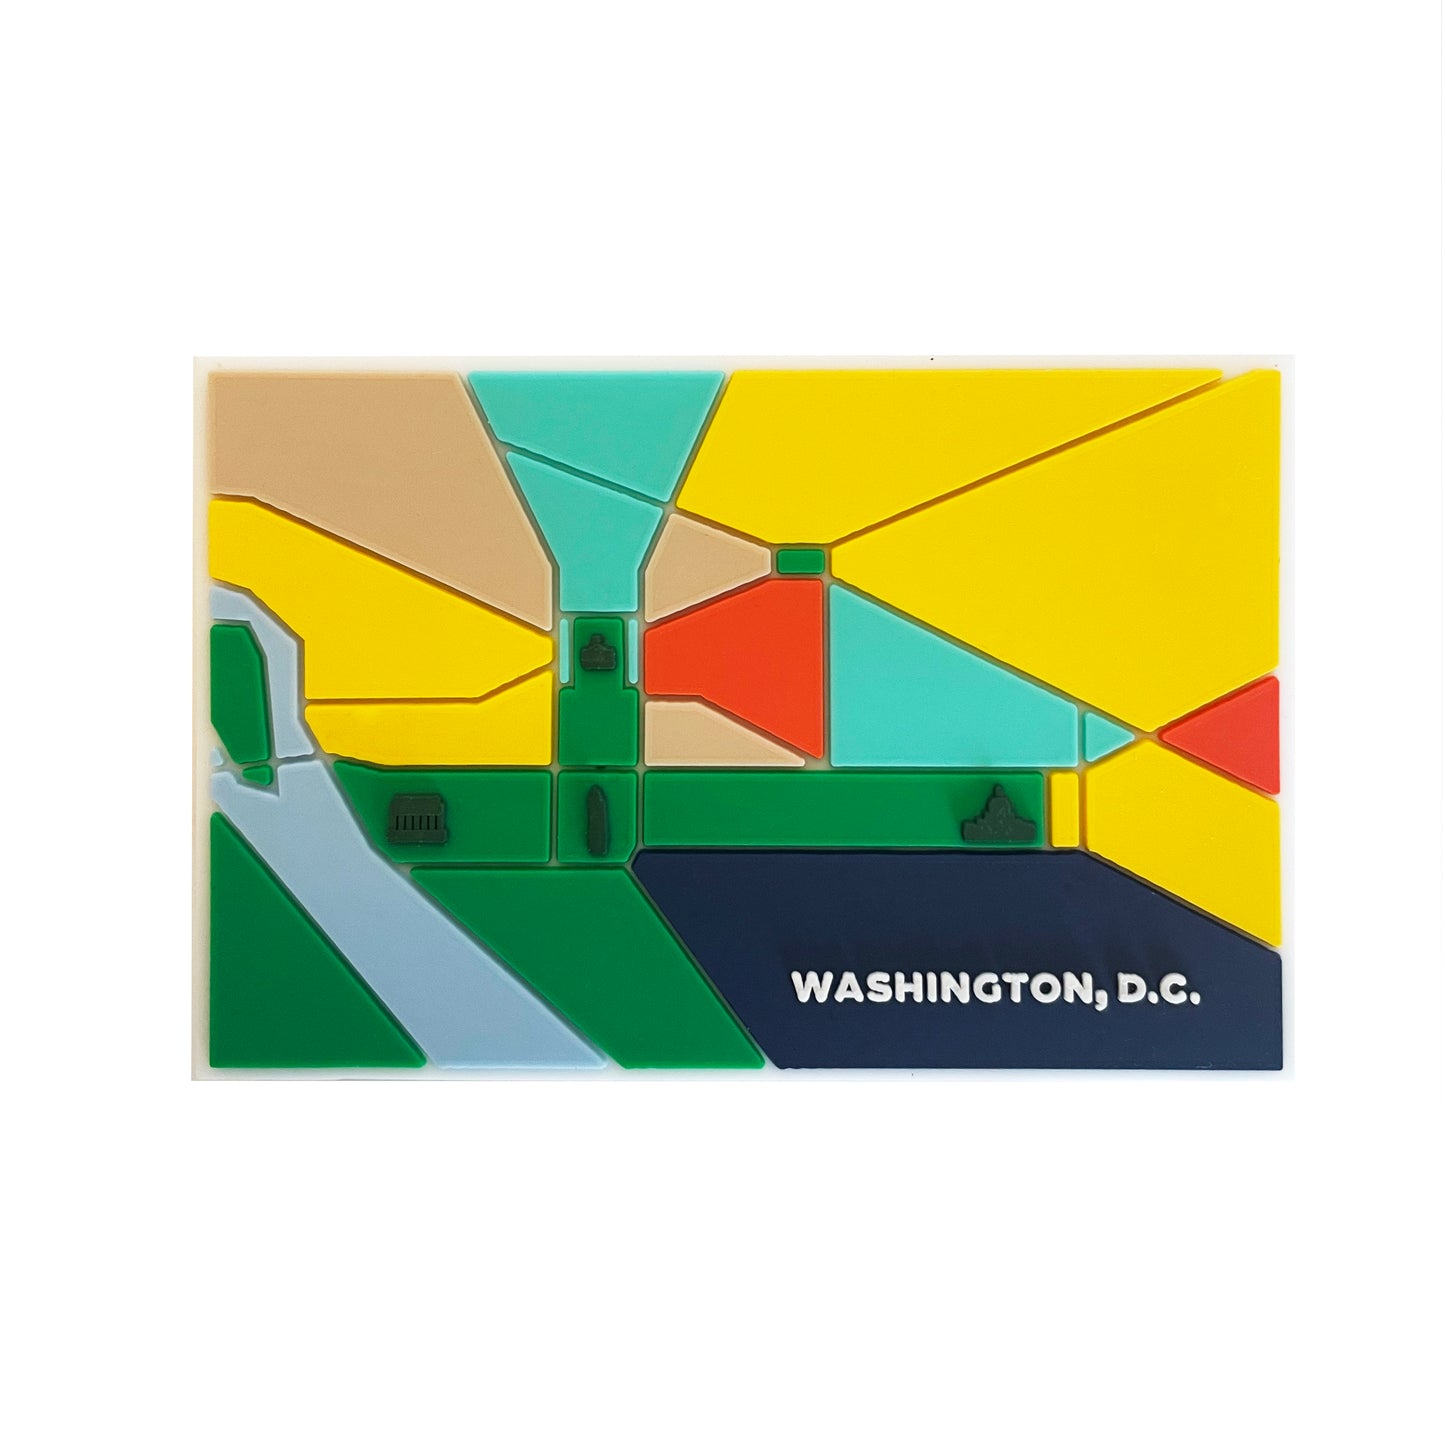 Washington, D.C. Magnet